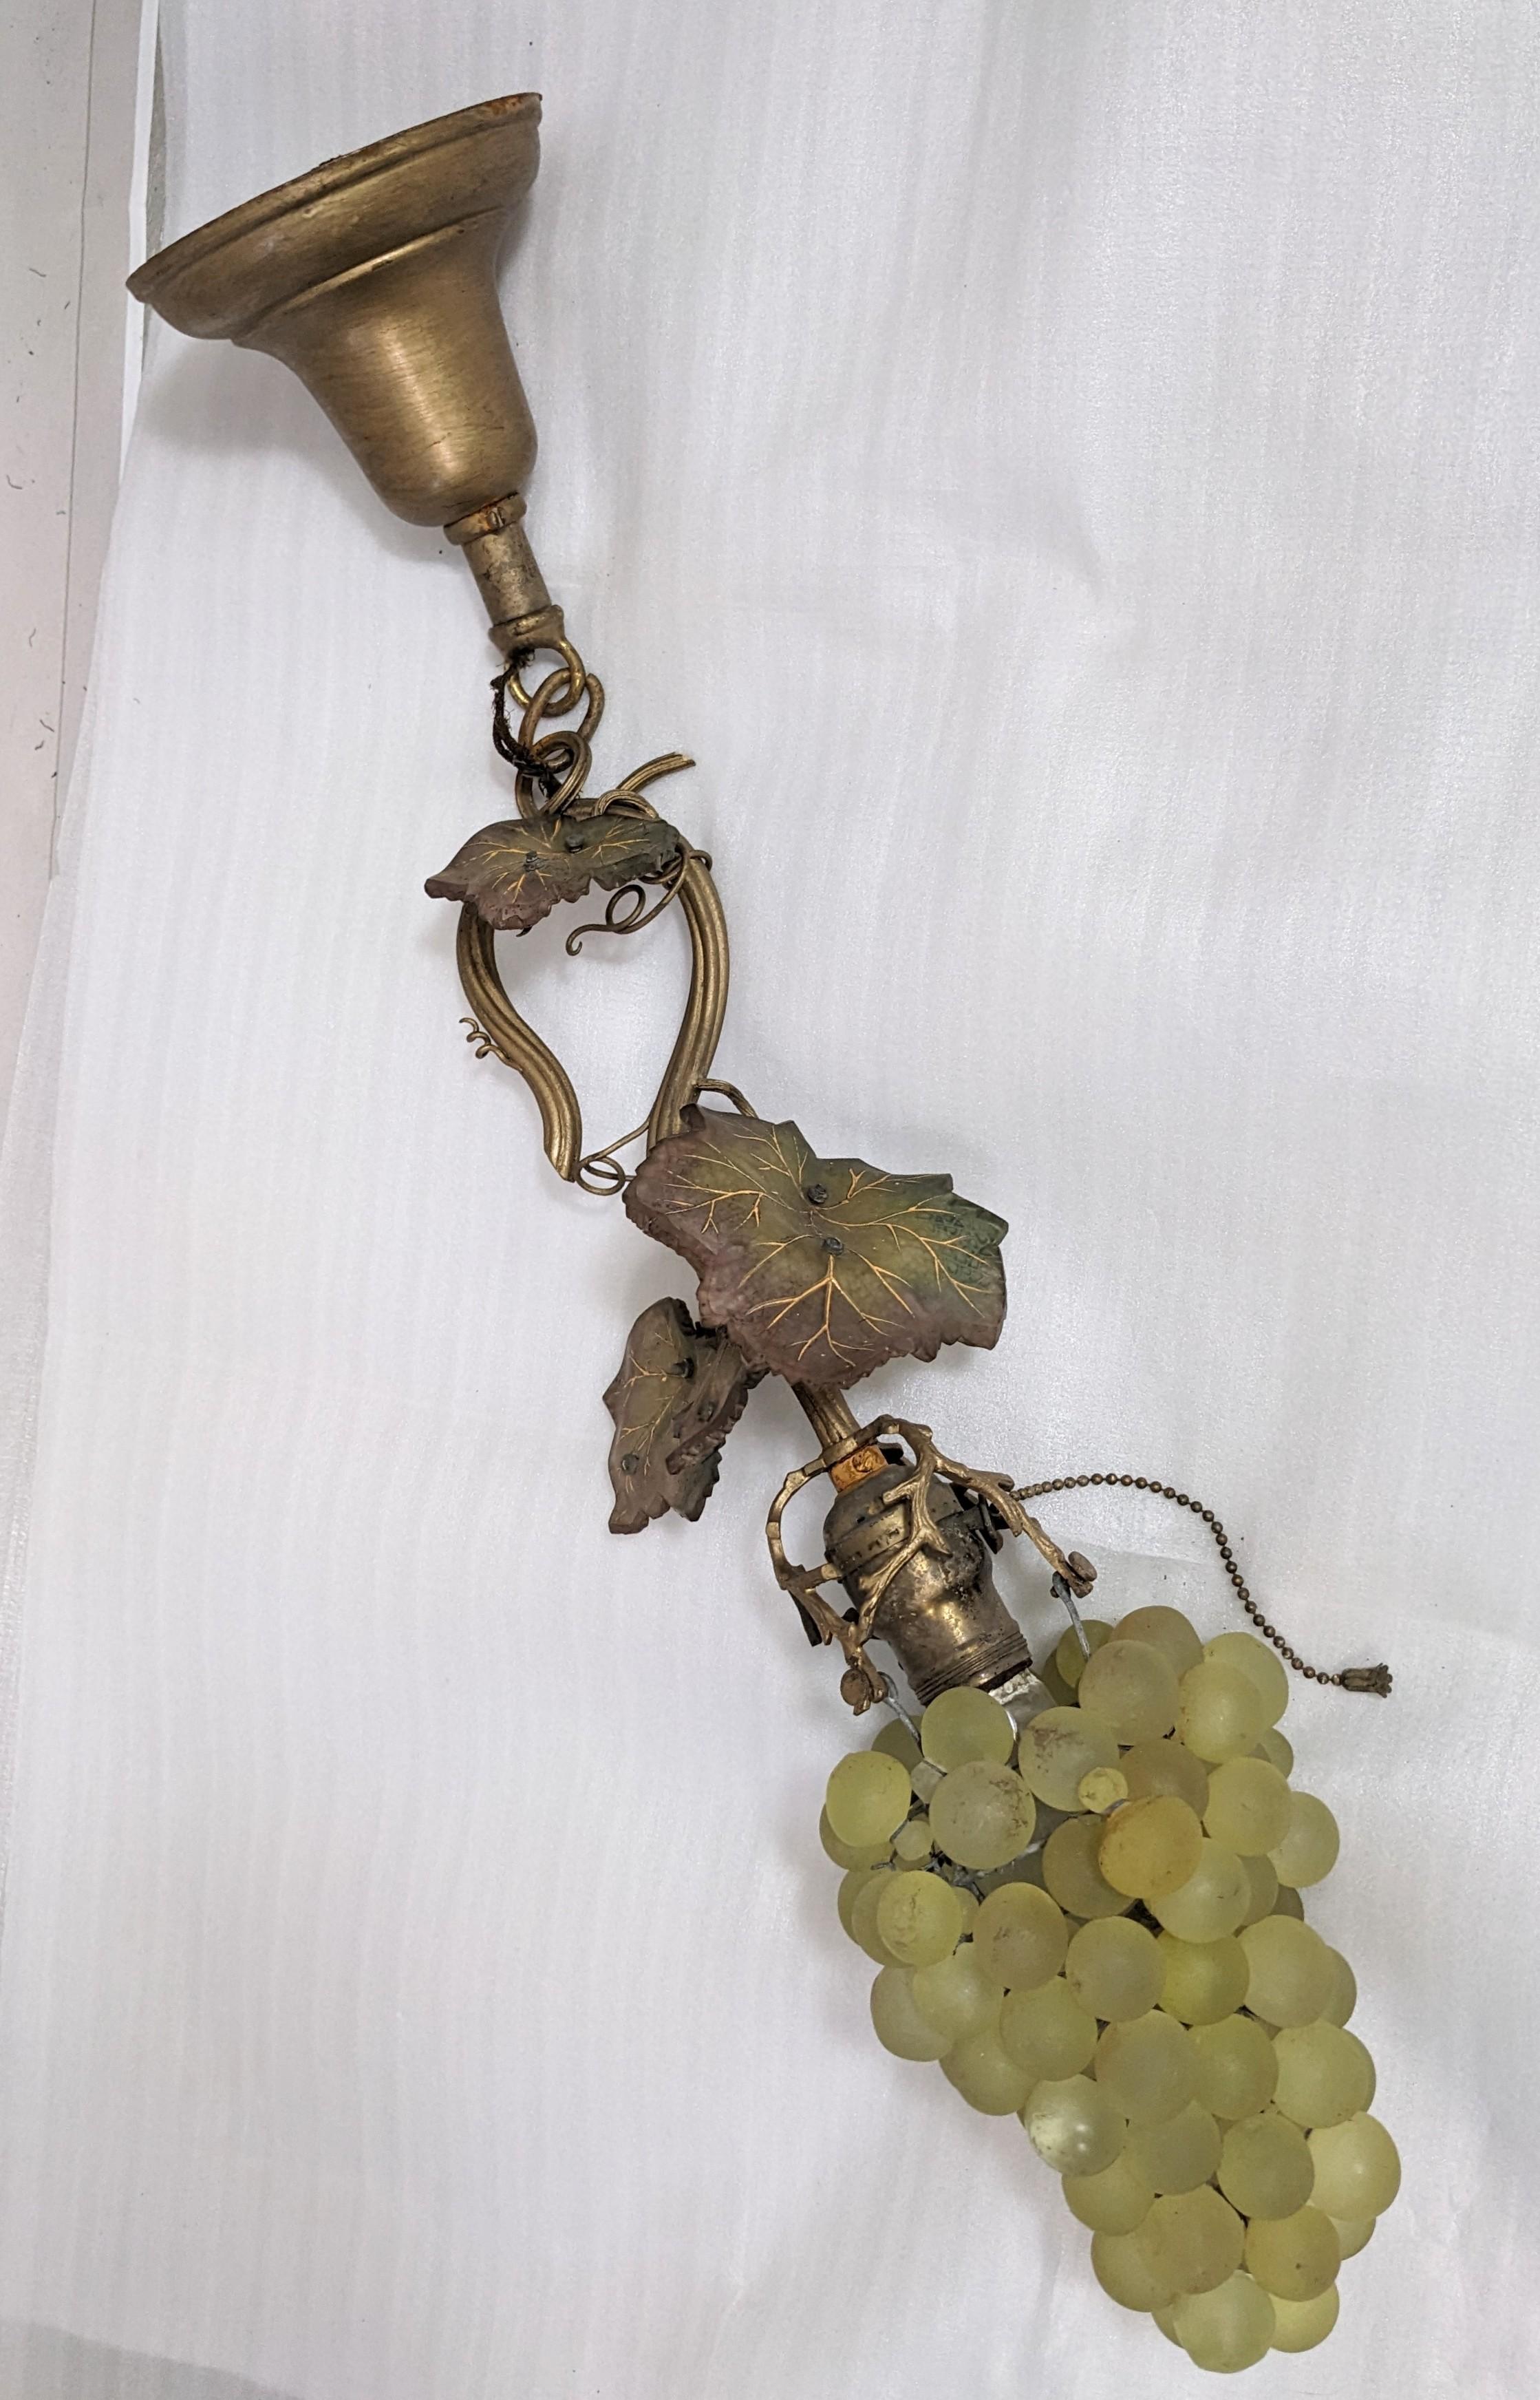 Ravissante lampe pendante Art Nouveau en verre à raisin d'origine européenne avec deux ensembles de grappes de raisin en verre jaune et vert d'uranium. Travail élaboré en métal tourbillonnant avec des vignes et des feuilles moulées en verre d'art